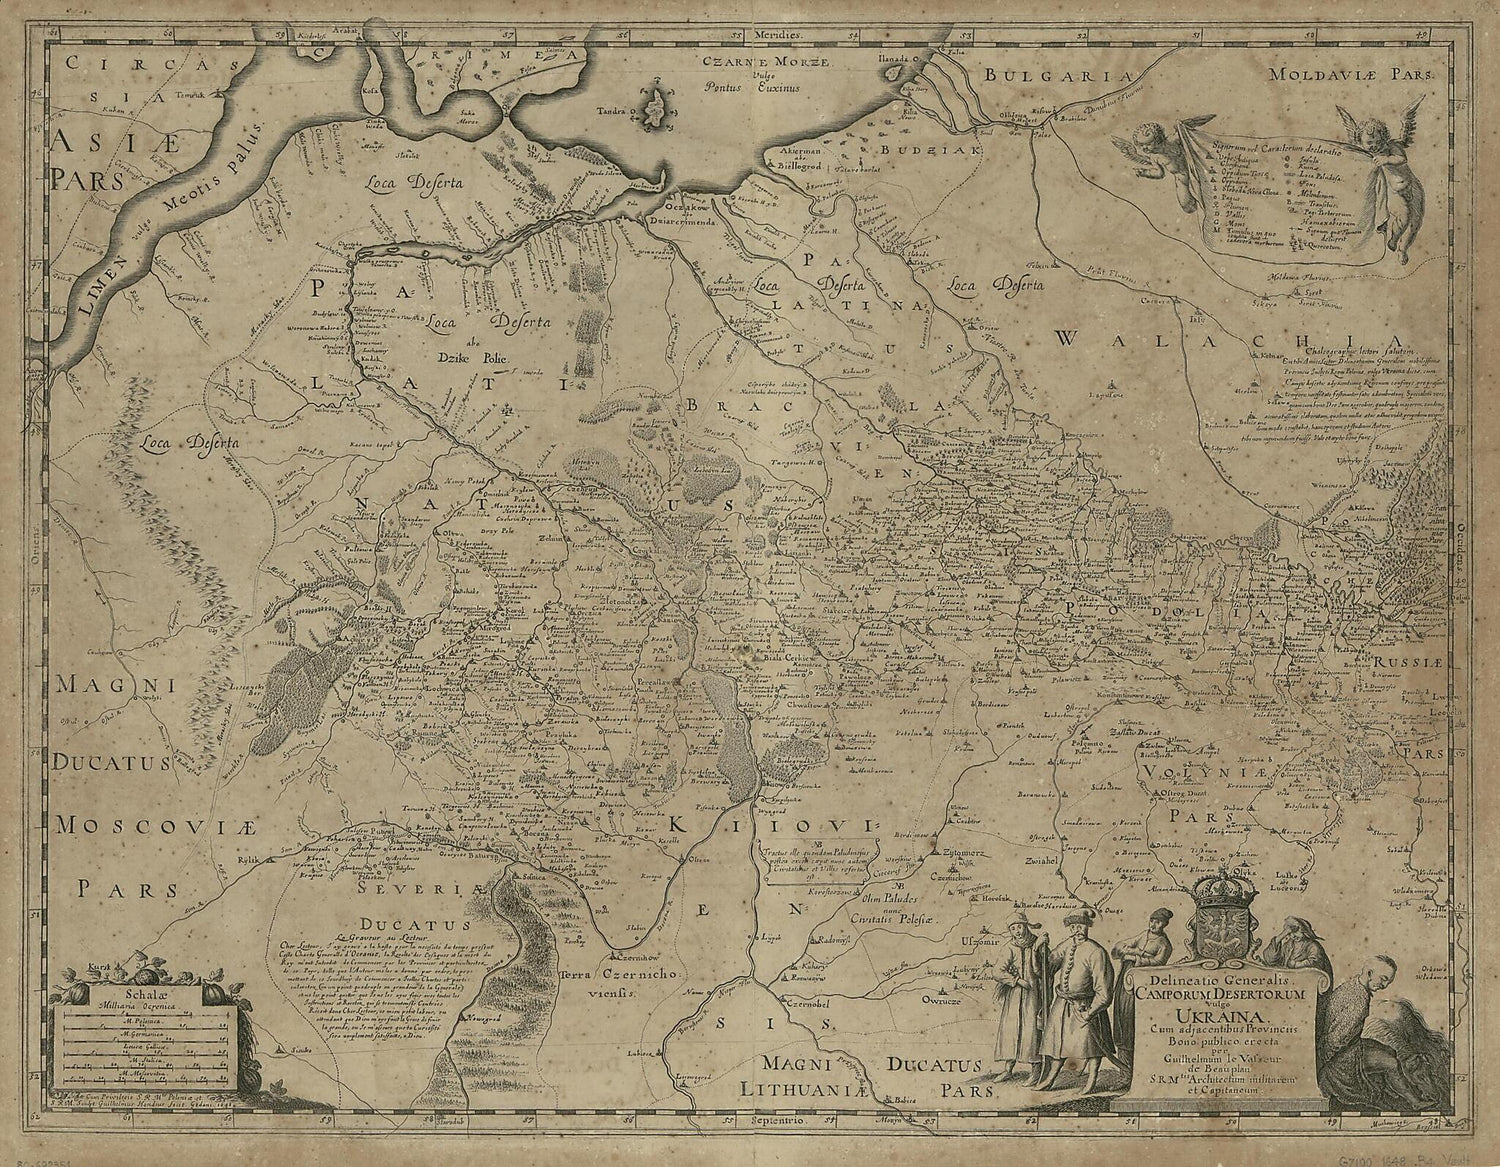 This old map of Delineatio Generalis Camporum Desertorum Vulgo Ukraina : Cum Adjacentibus Provinciis from 1648 was created by Guillaume Le Vasseur Beauplan, Willem Hondius in 1648